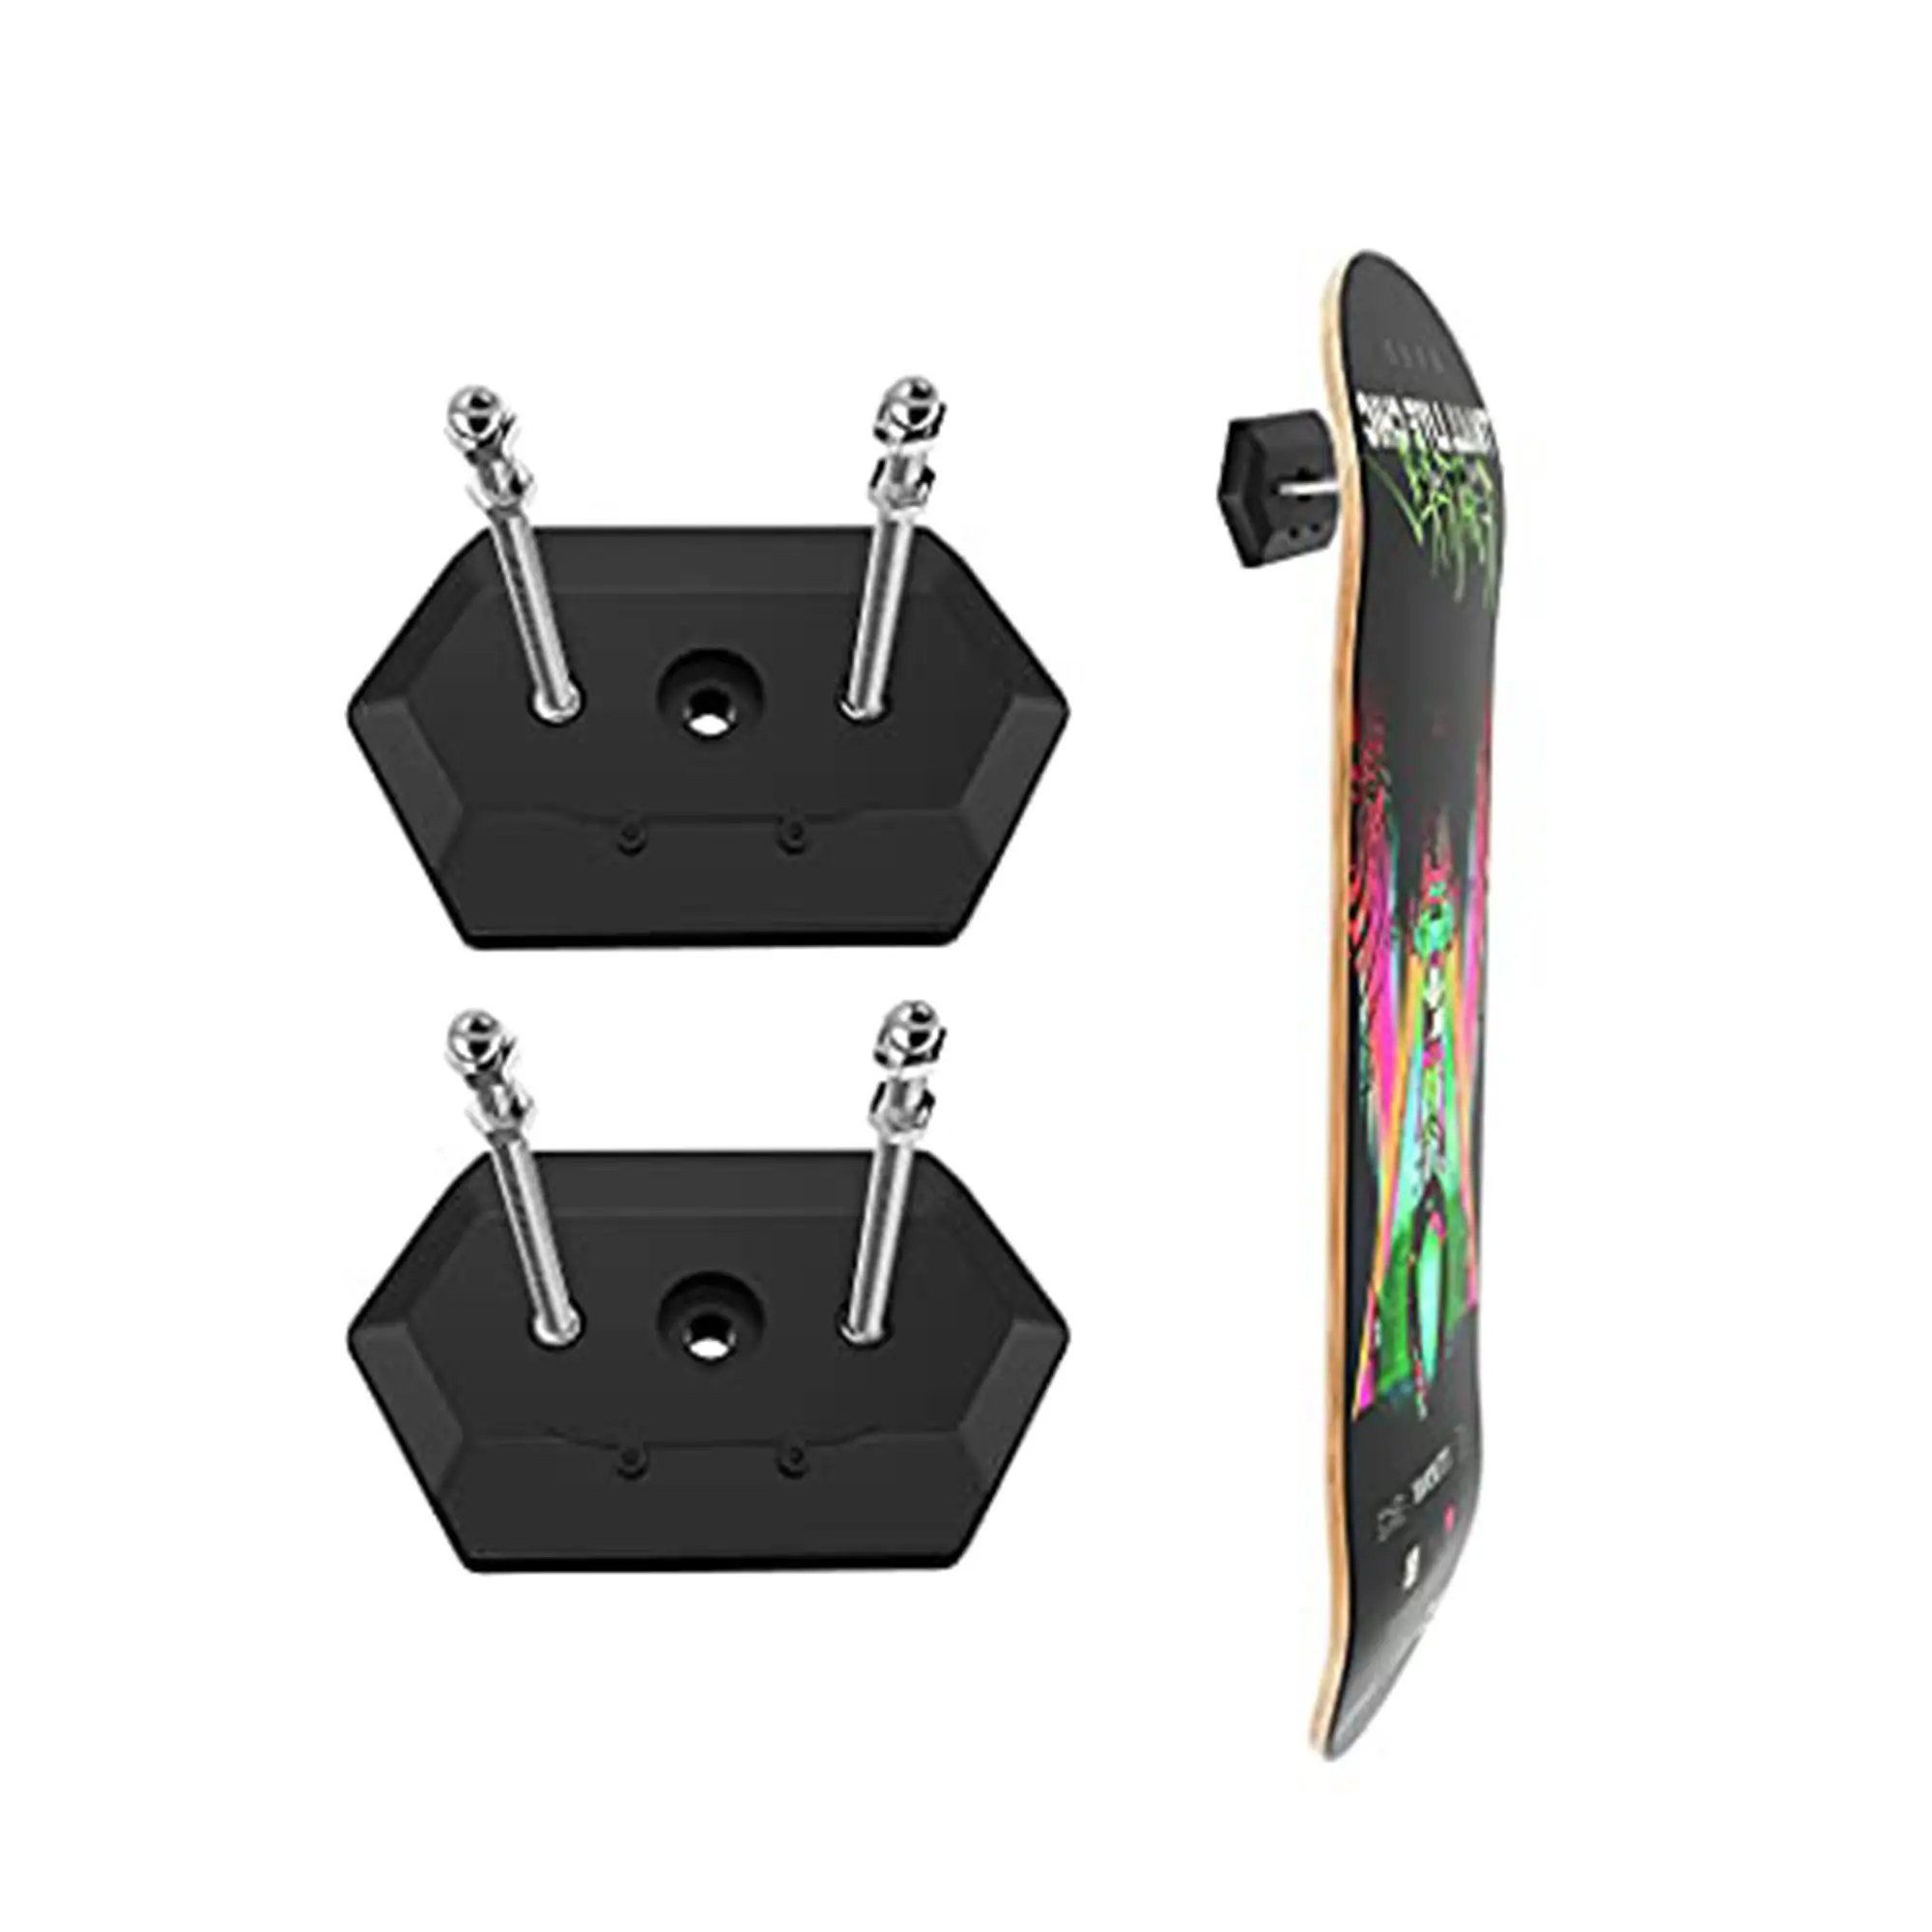 Benutzer definiertes Logo Skate Board Acryl ständer Wand montage Acryl Skateboard Deck Display Rack Halter